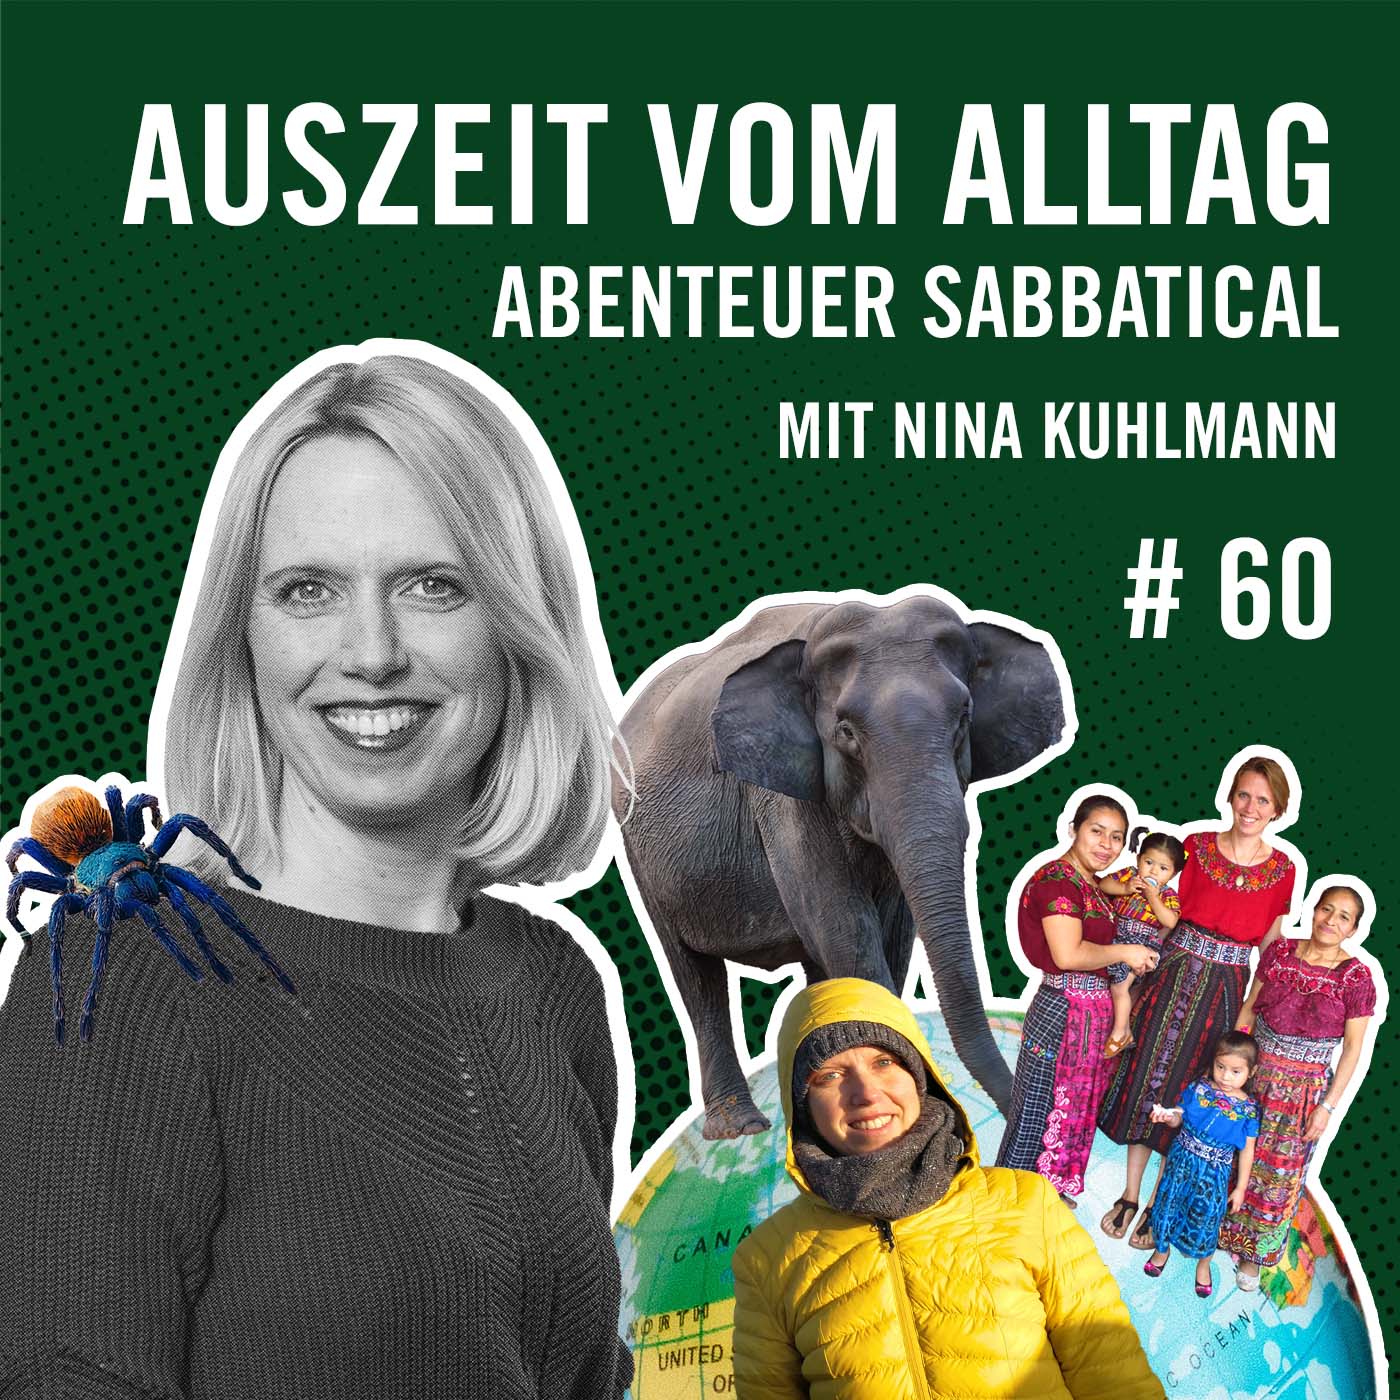 Auszeit vom Alltag, Abenteuer Sabbatical mit Nina Kuhlmann #60